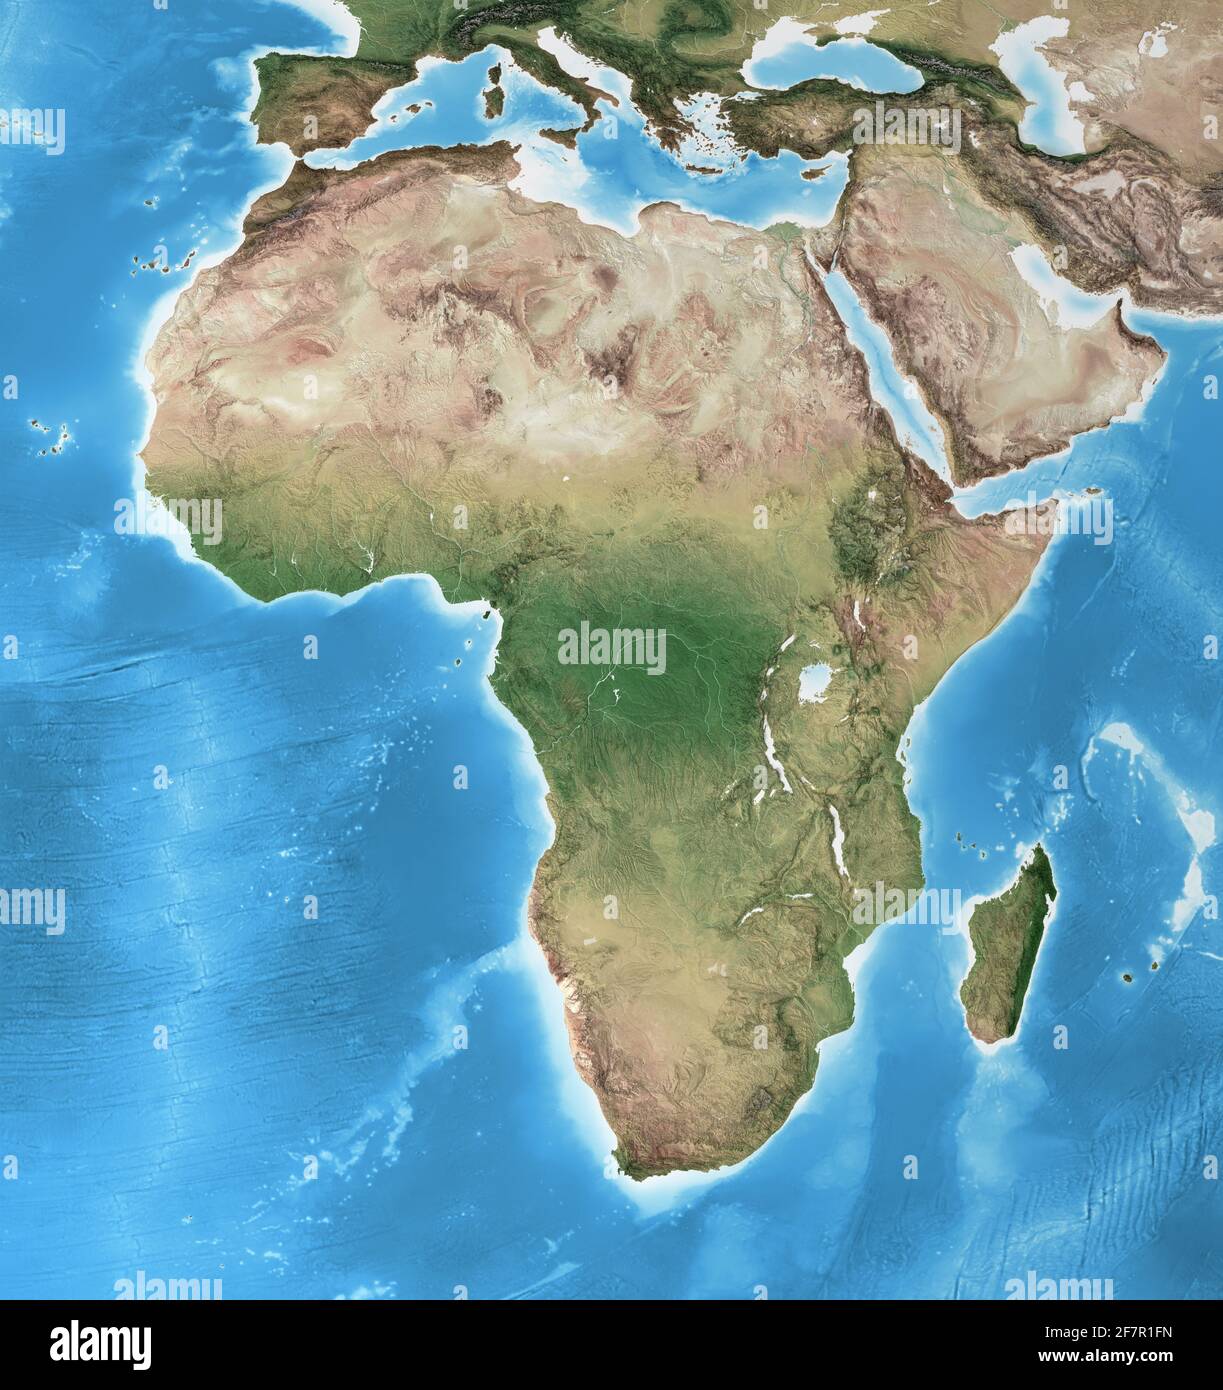 Carte physique de l'Afrique, avec détails haute résolution. Vue satellite aplatie de la planète Terre et de sa géographie - éléments fournis par la NASA Banque D'Images